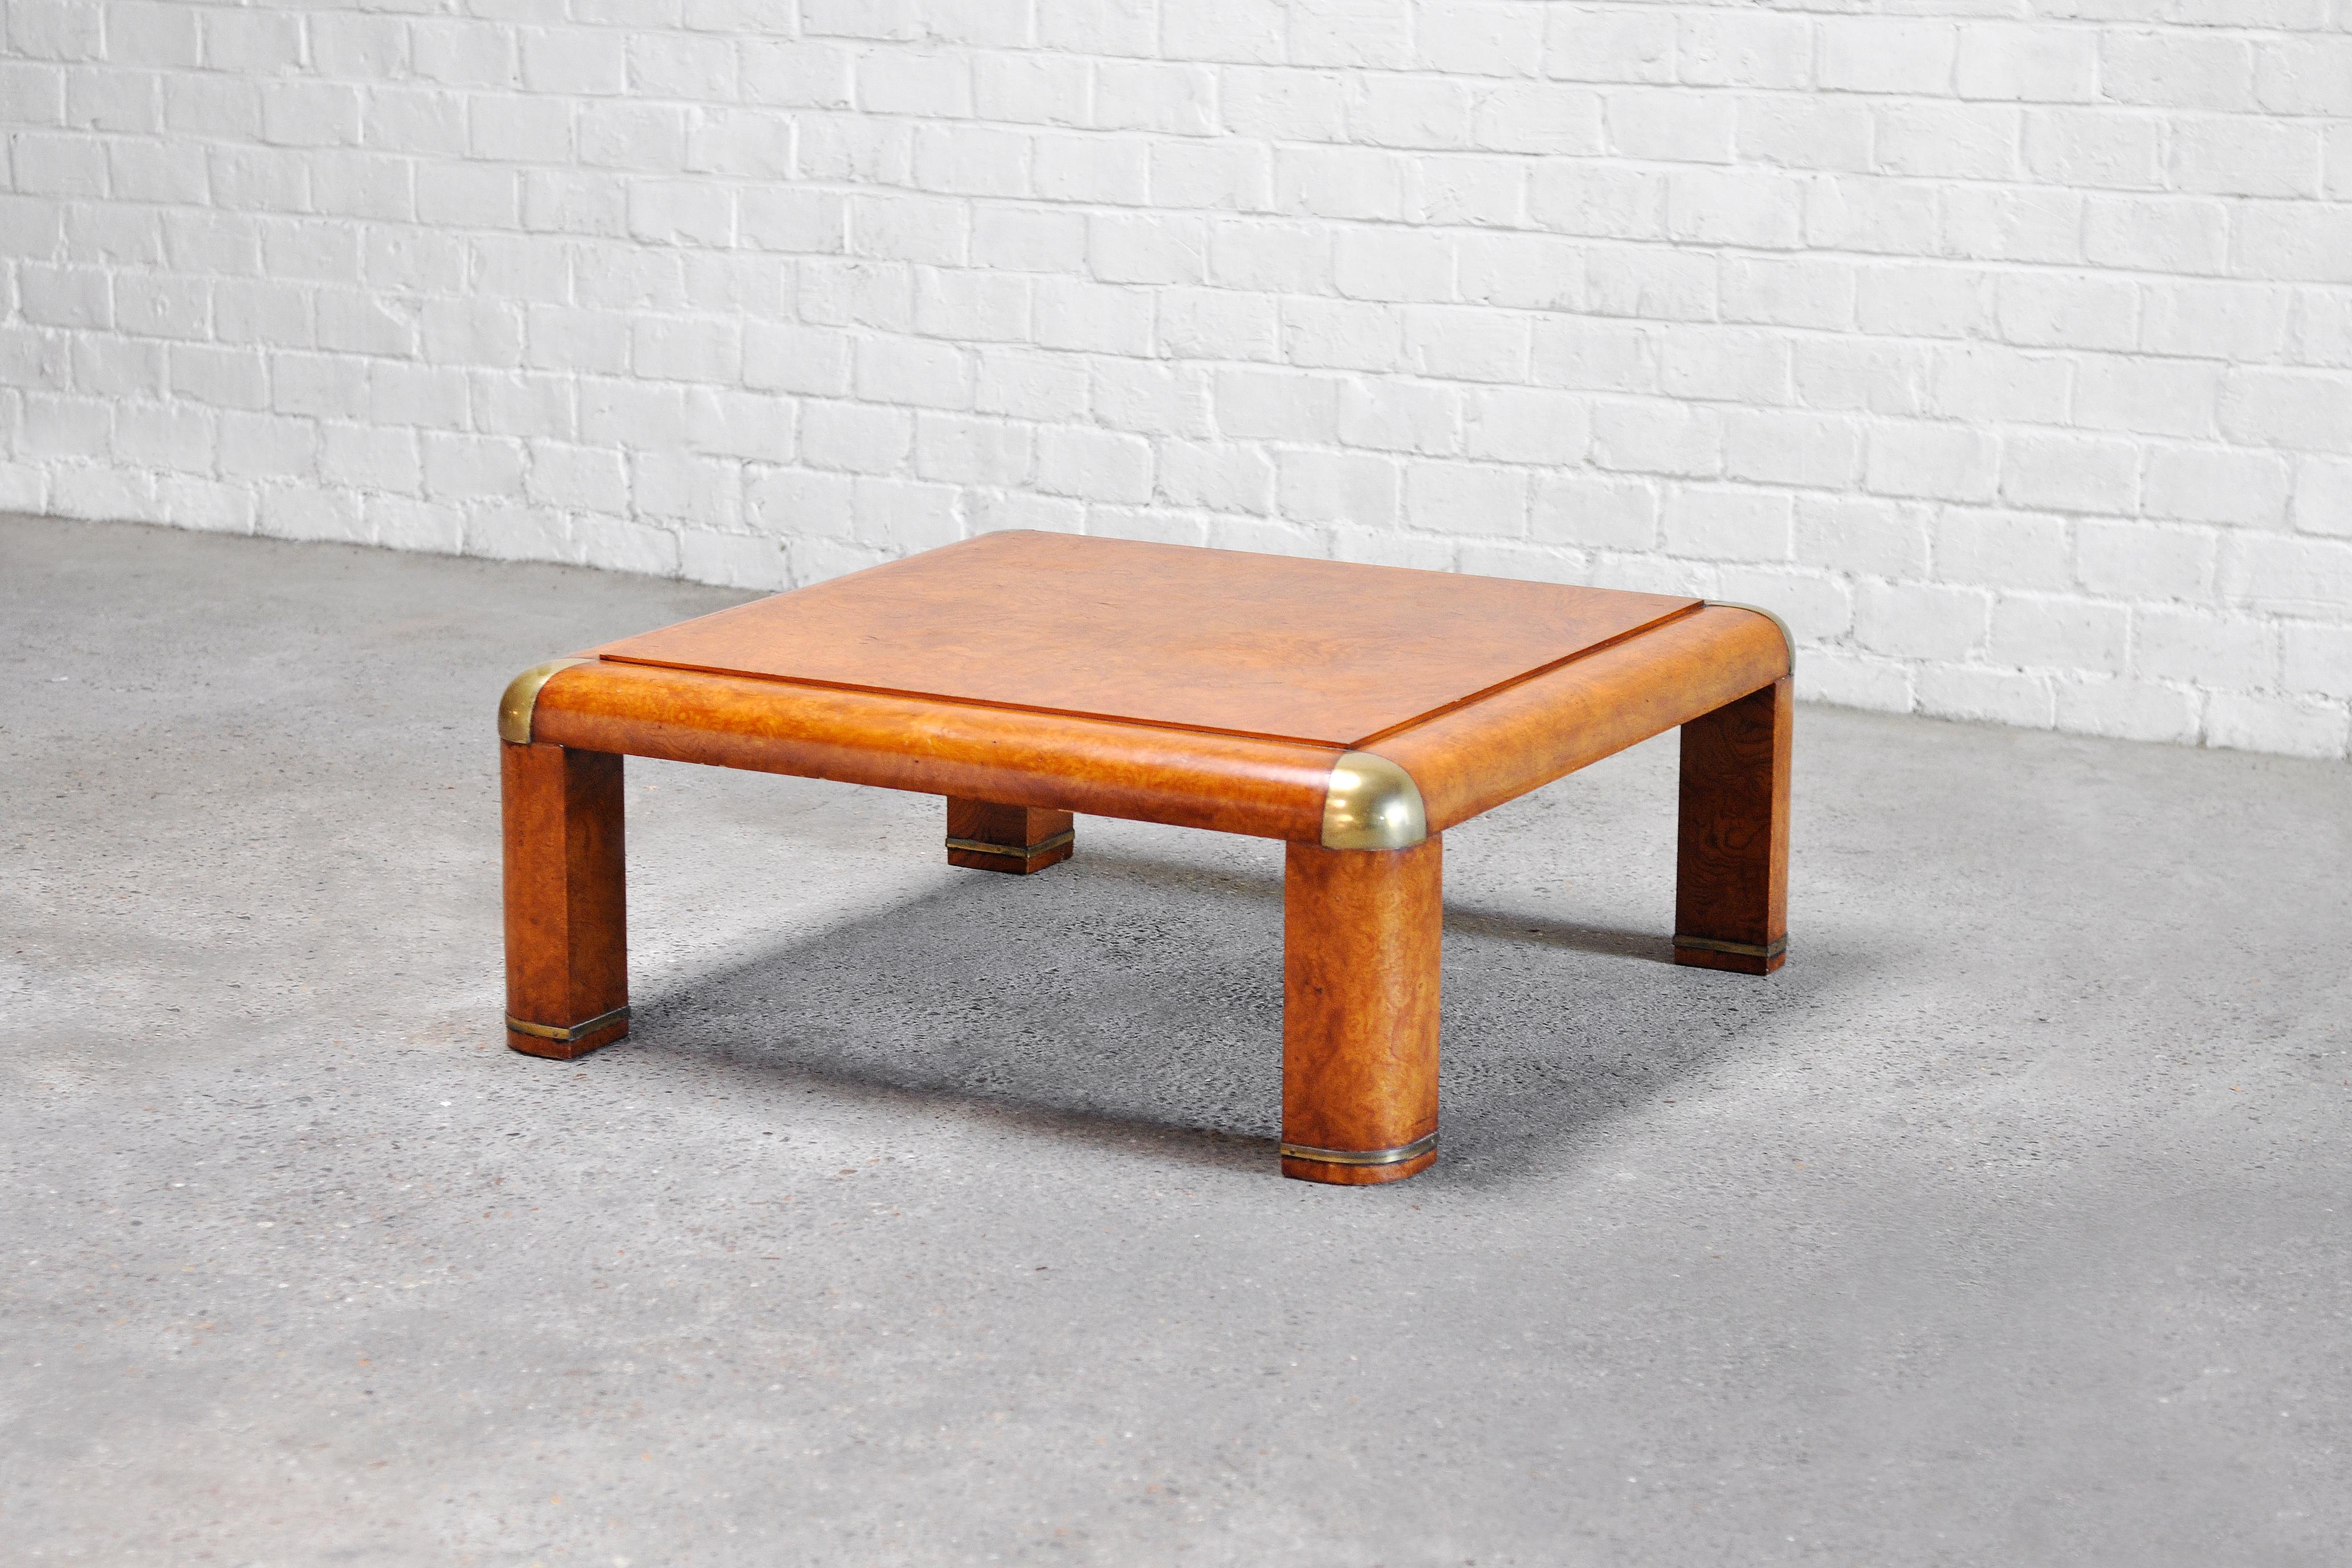 Une table basse unique en bois de ronce avec de grands accents en laiton. Cette table date des années 1970 et est attribuée à Karl Springer en raison de ses caractéristiques typiques de design assorti. Elle présente un design bas et ludique fini par